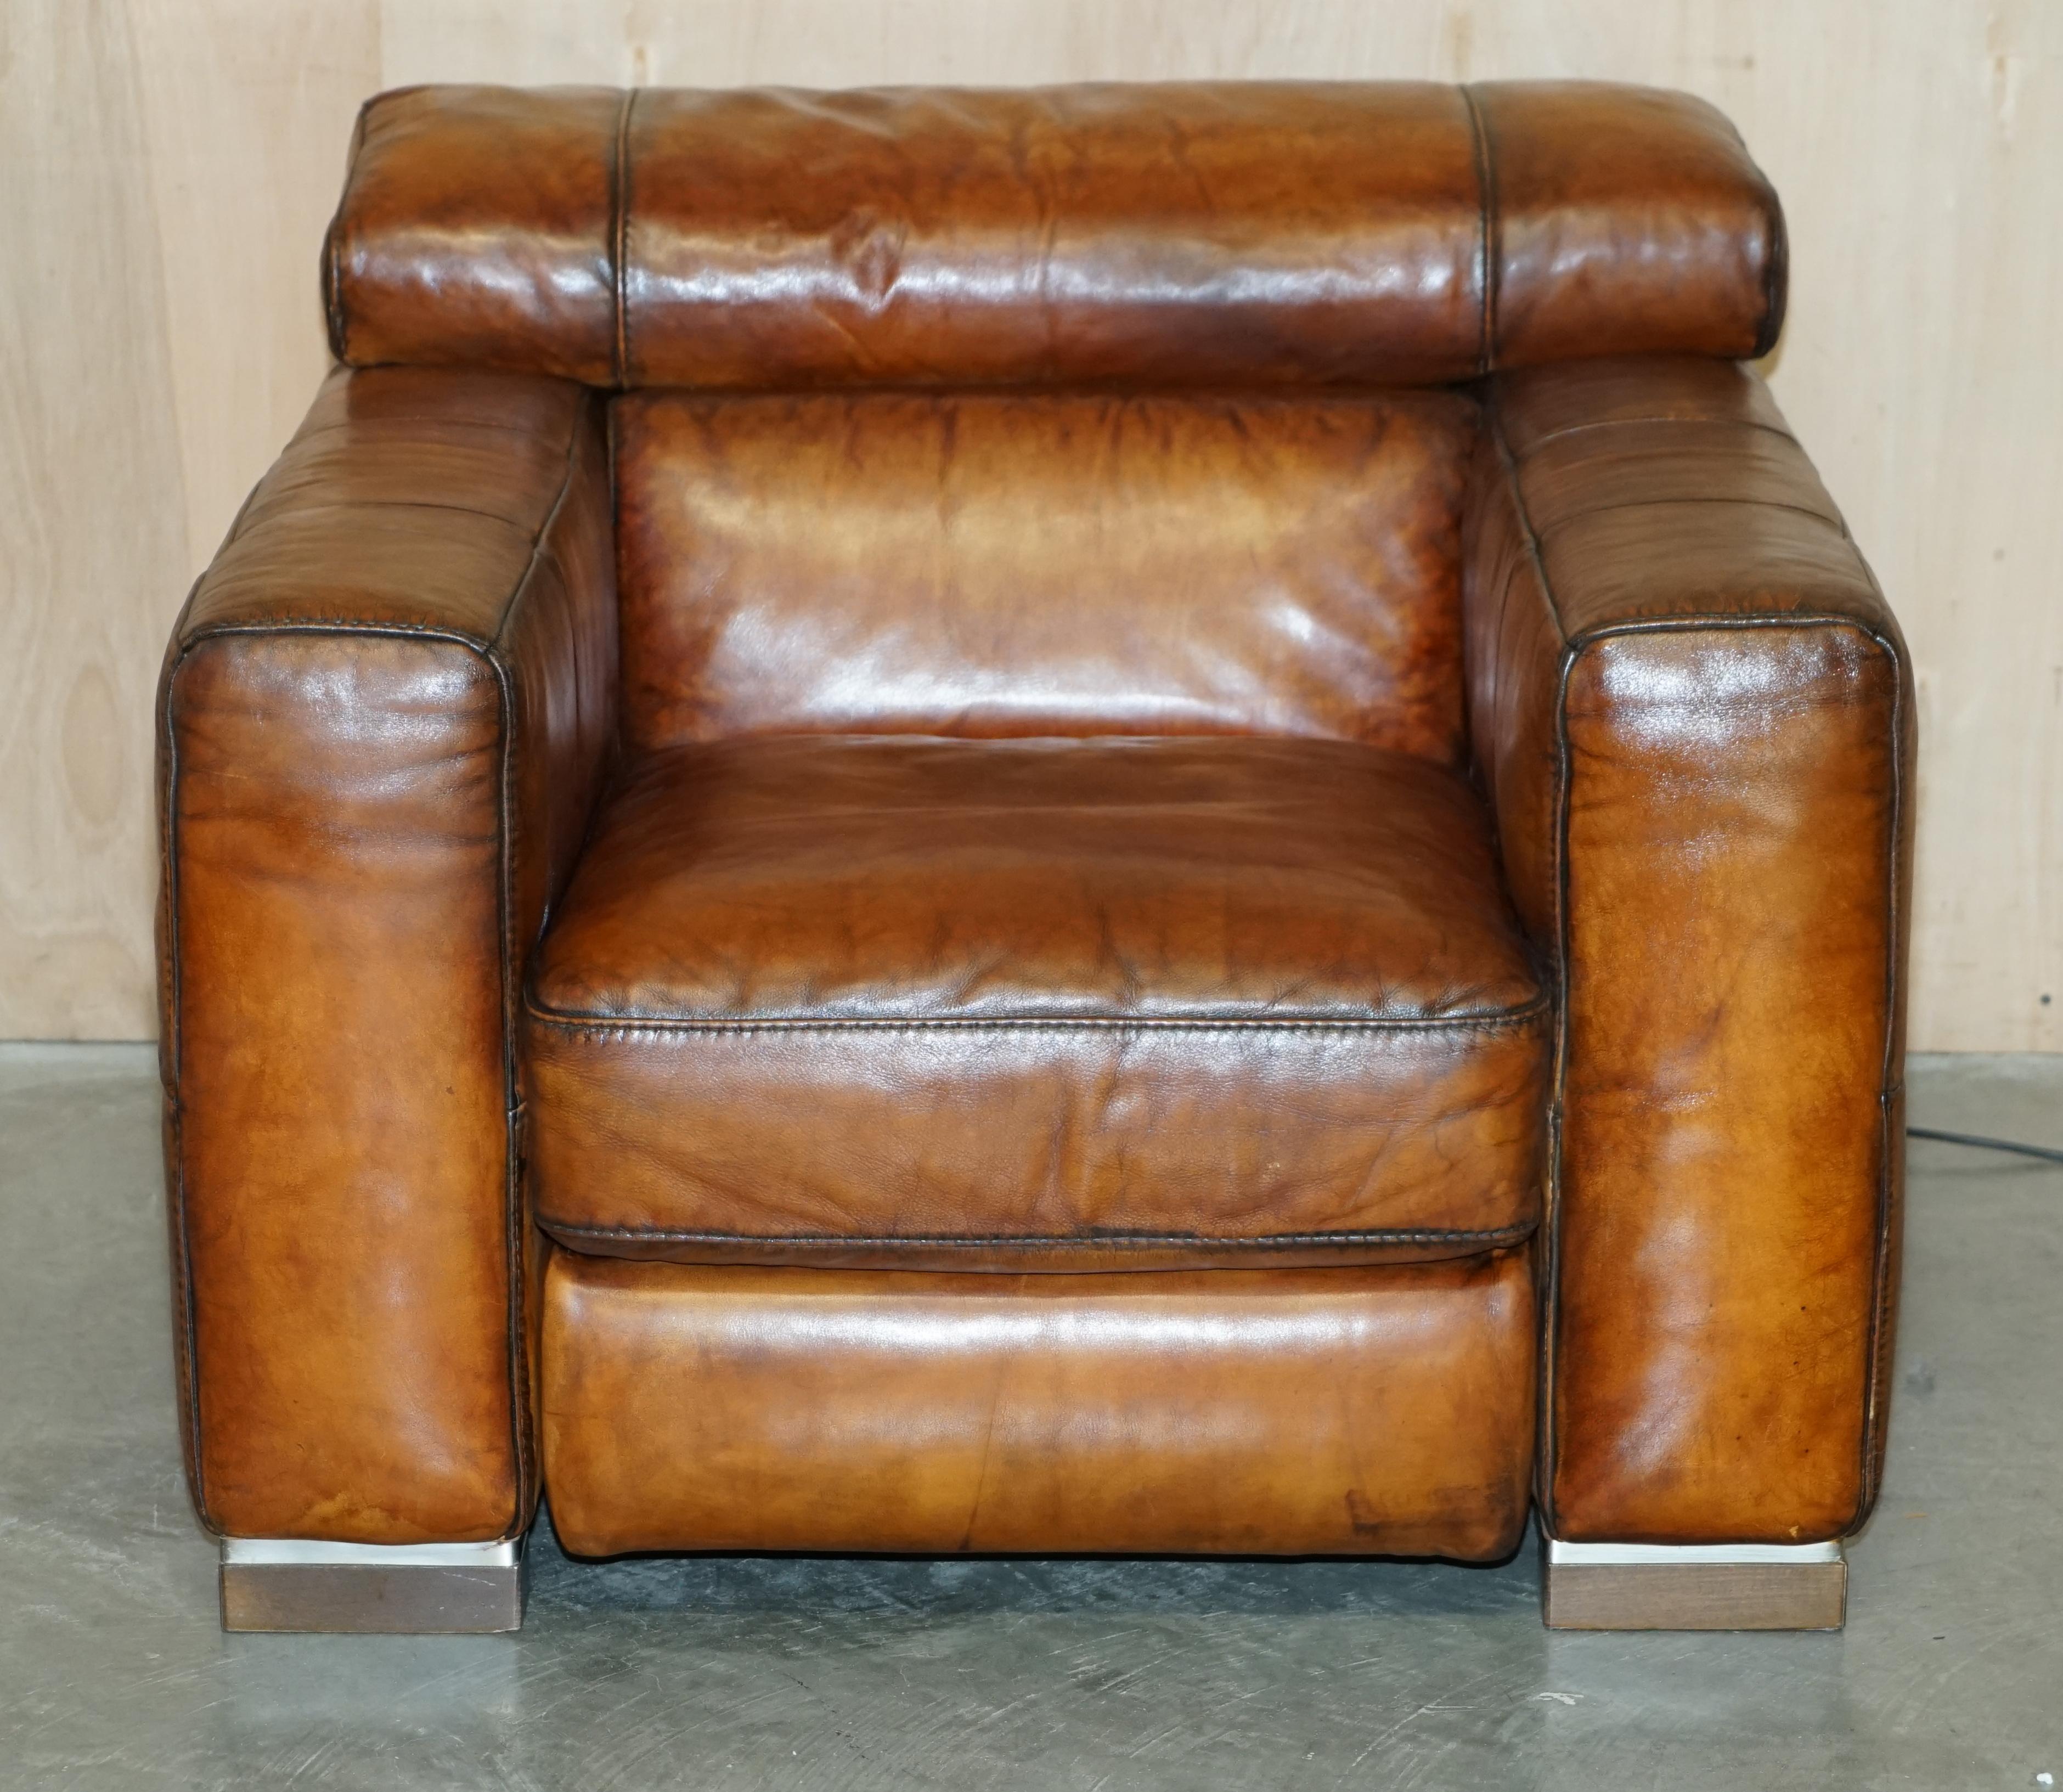 Nous sommes ravis d'offrir à la vente ce fauteuil entièrement restauré, unique en son genre, des Editions Natuzzi Roma, en cuir teint à la main en brun cigare, avec appui-tête électrique et petit repose-pieds, qui fait partie d'une grande